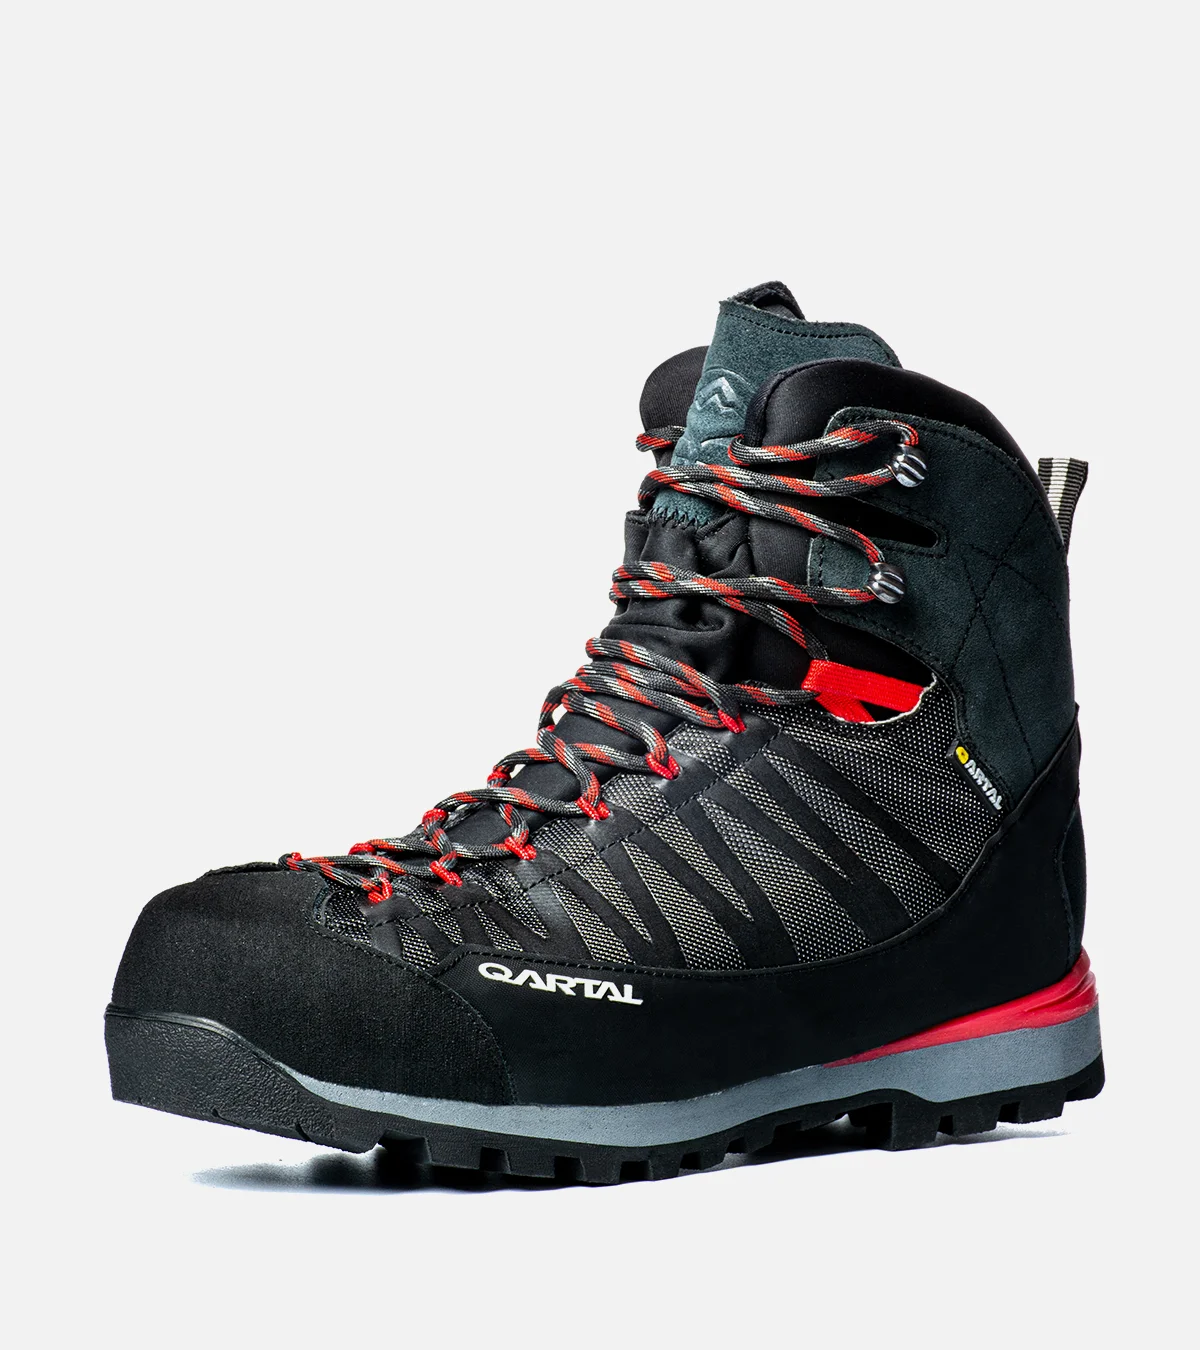 کفش کوهنوردی قارتال مدل s2 قرمز